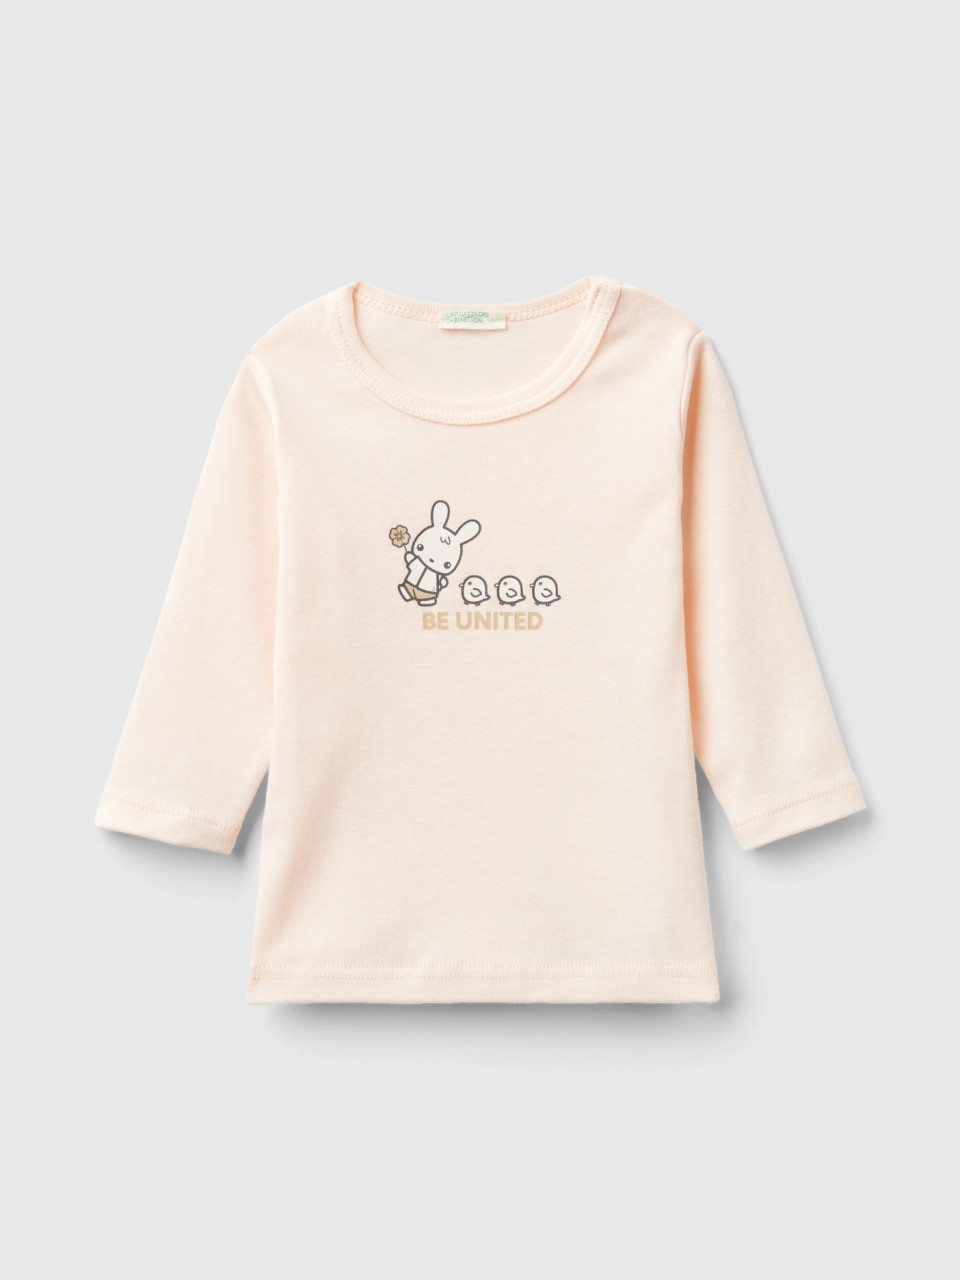 Benetton, Long Sleeve 100% Organic Cotton T-shirt, Peach, Kids